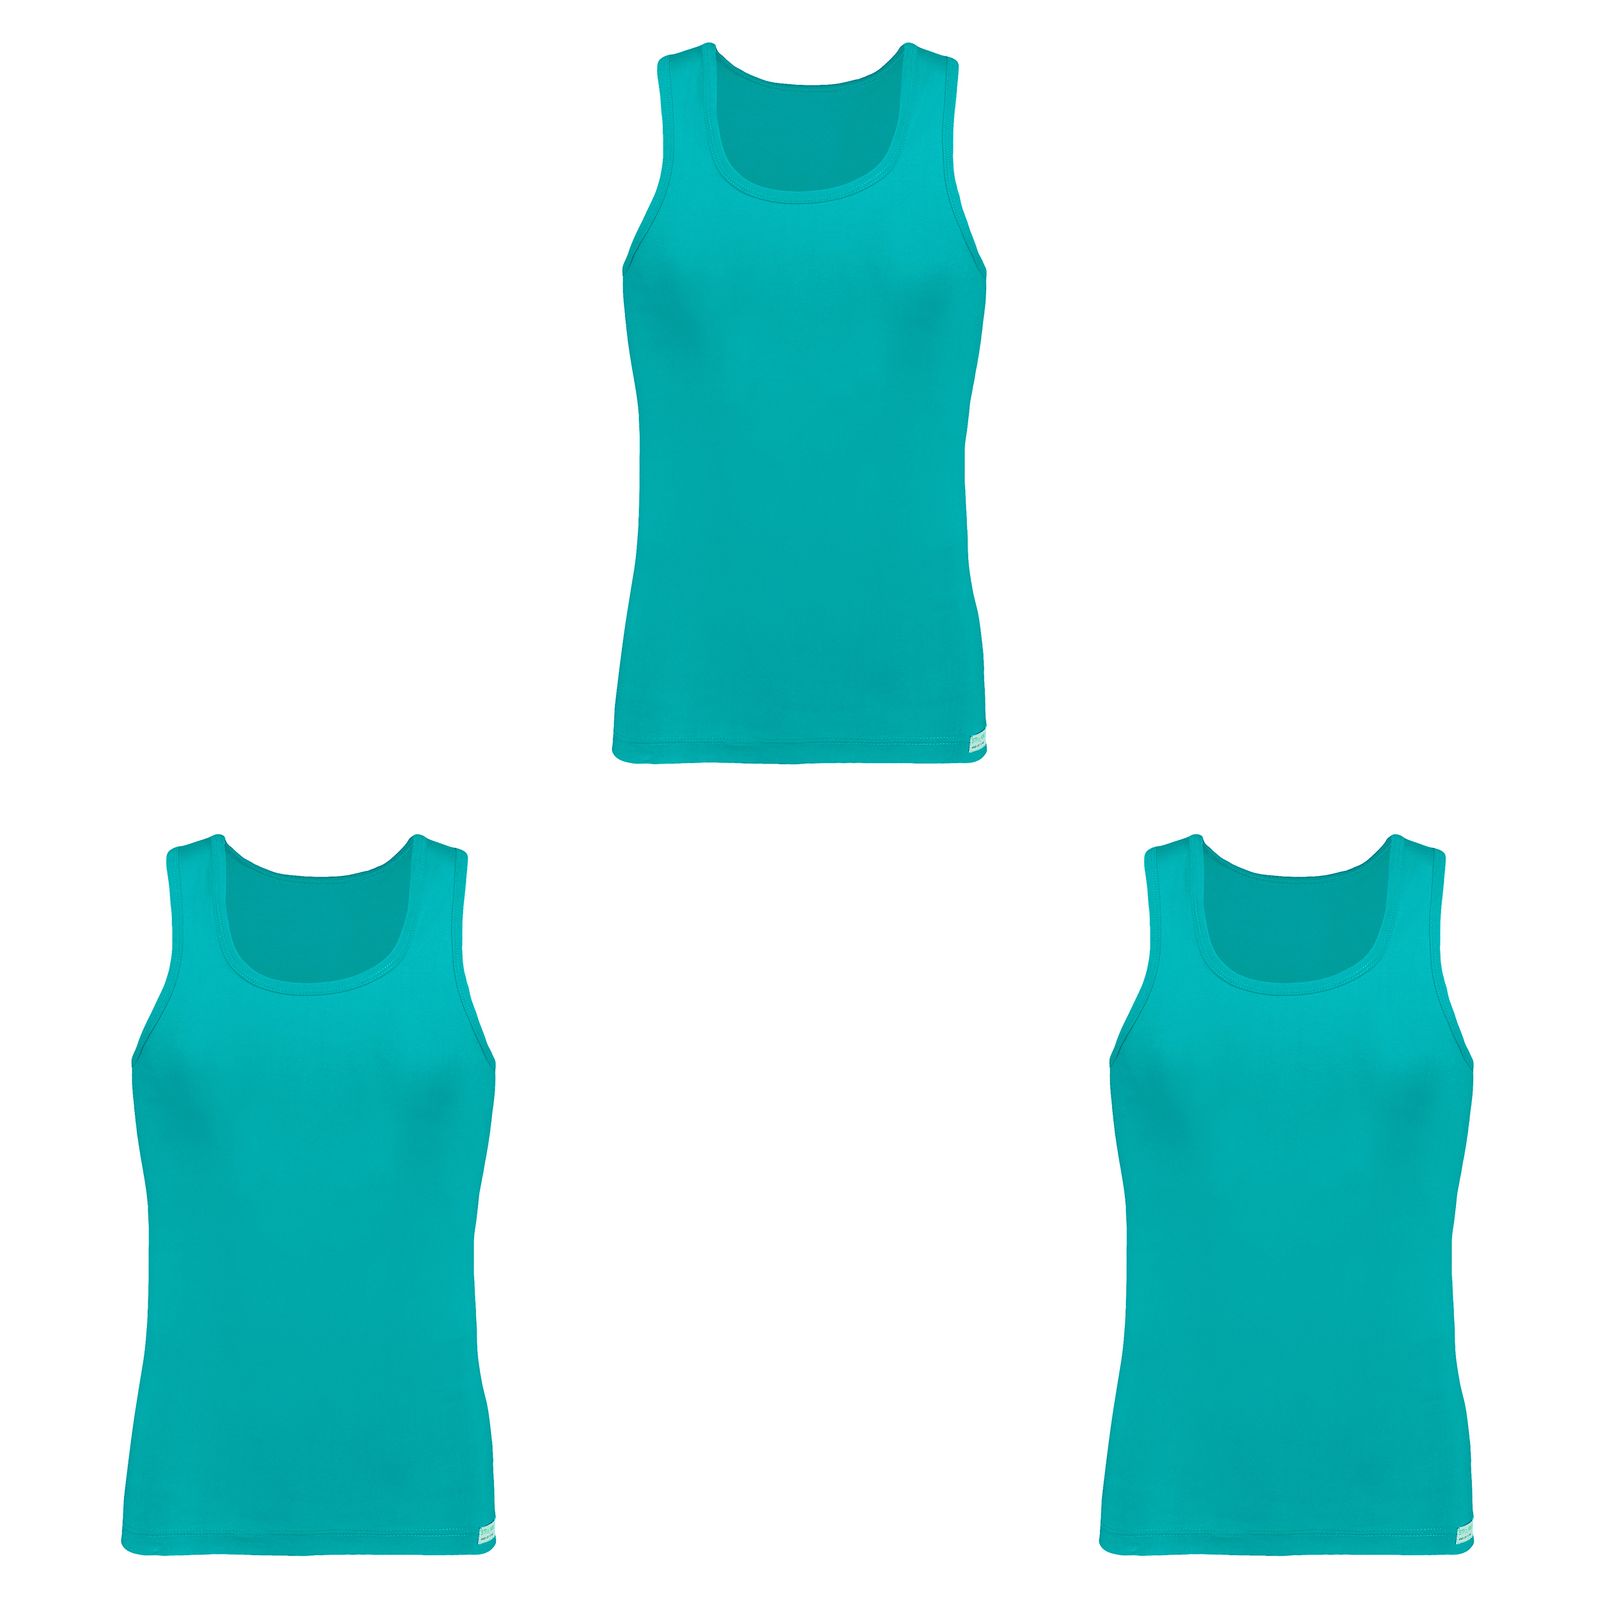 زیرپوش رکابی مردانه برهان تن پوش مدل 8-01 رنگ سبز آبی بسته 3 عددی